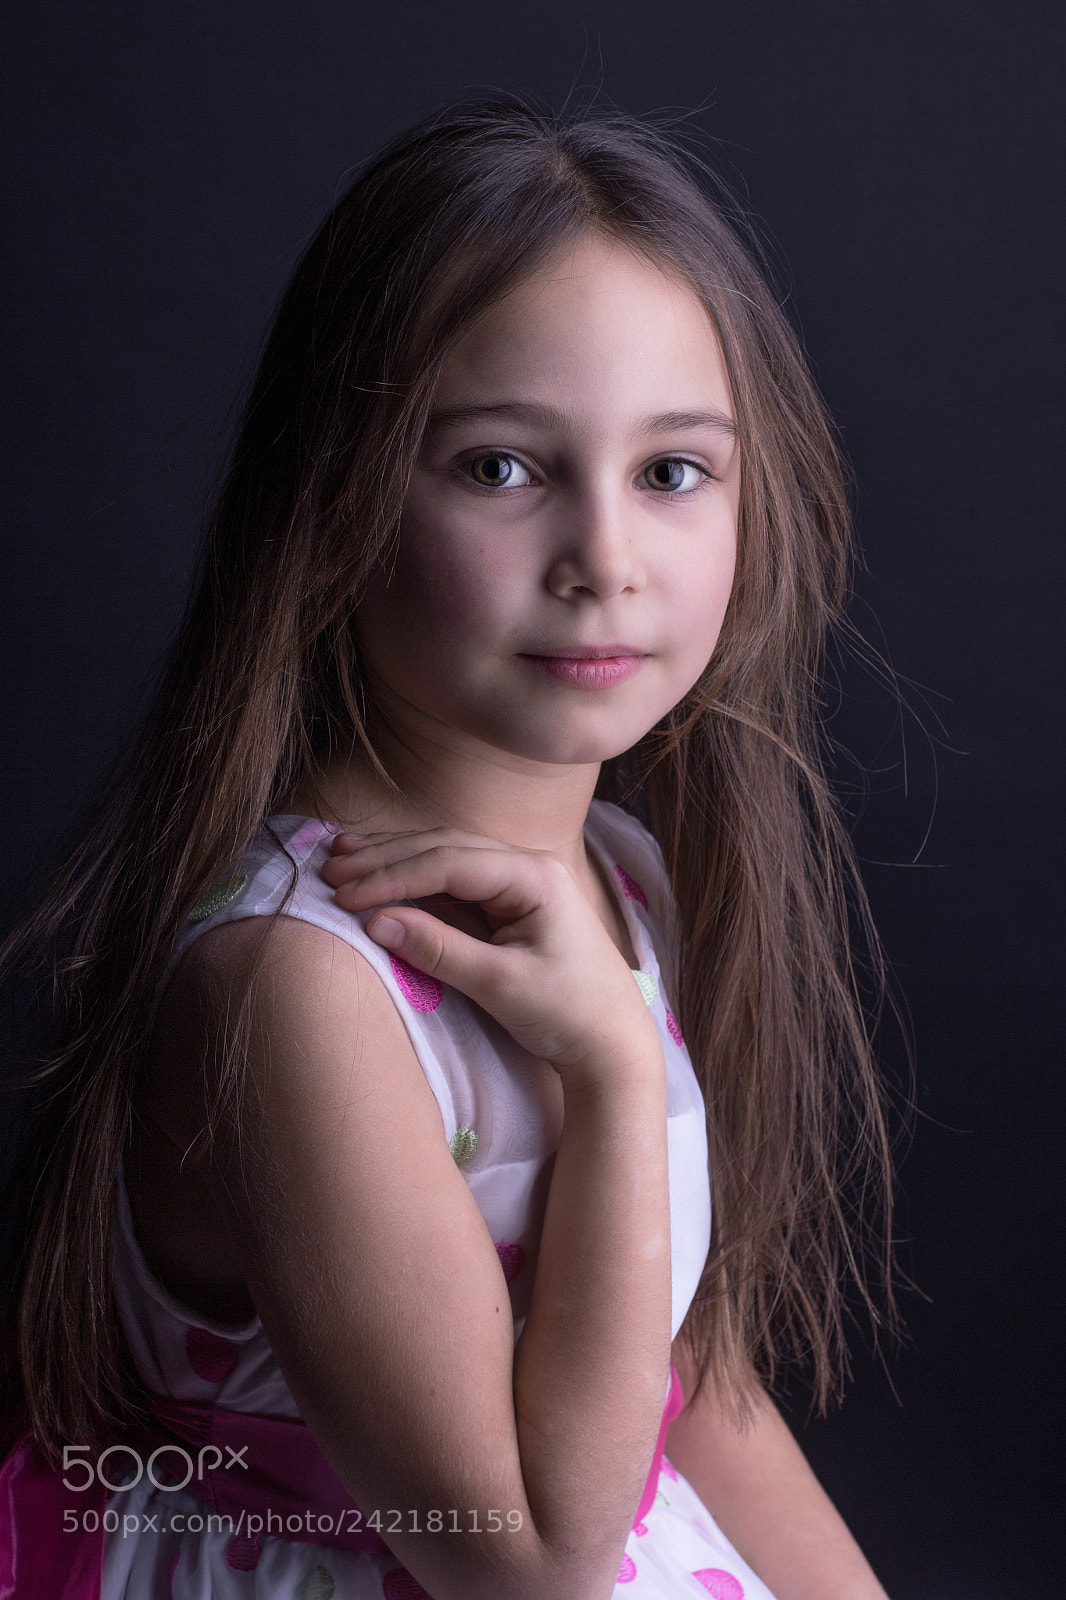 Canon EOS 60D sample photo. Portrait enfant photography